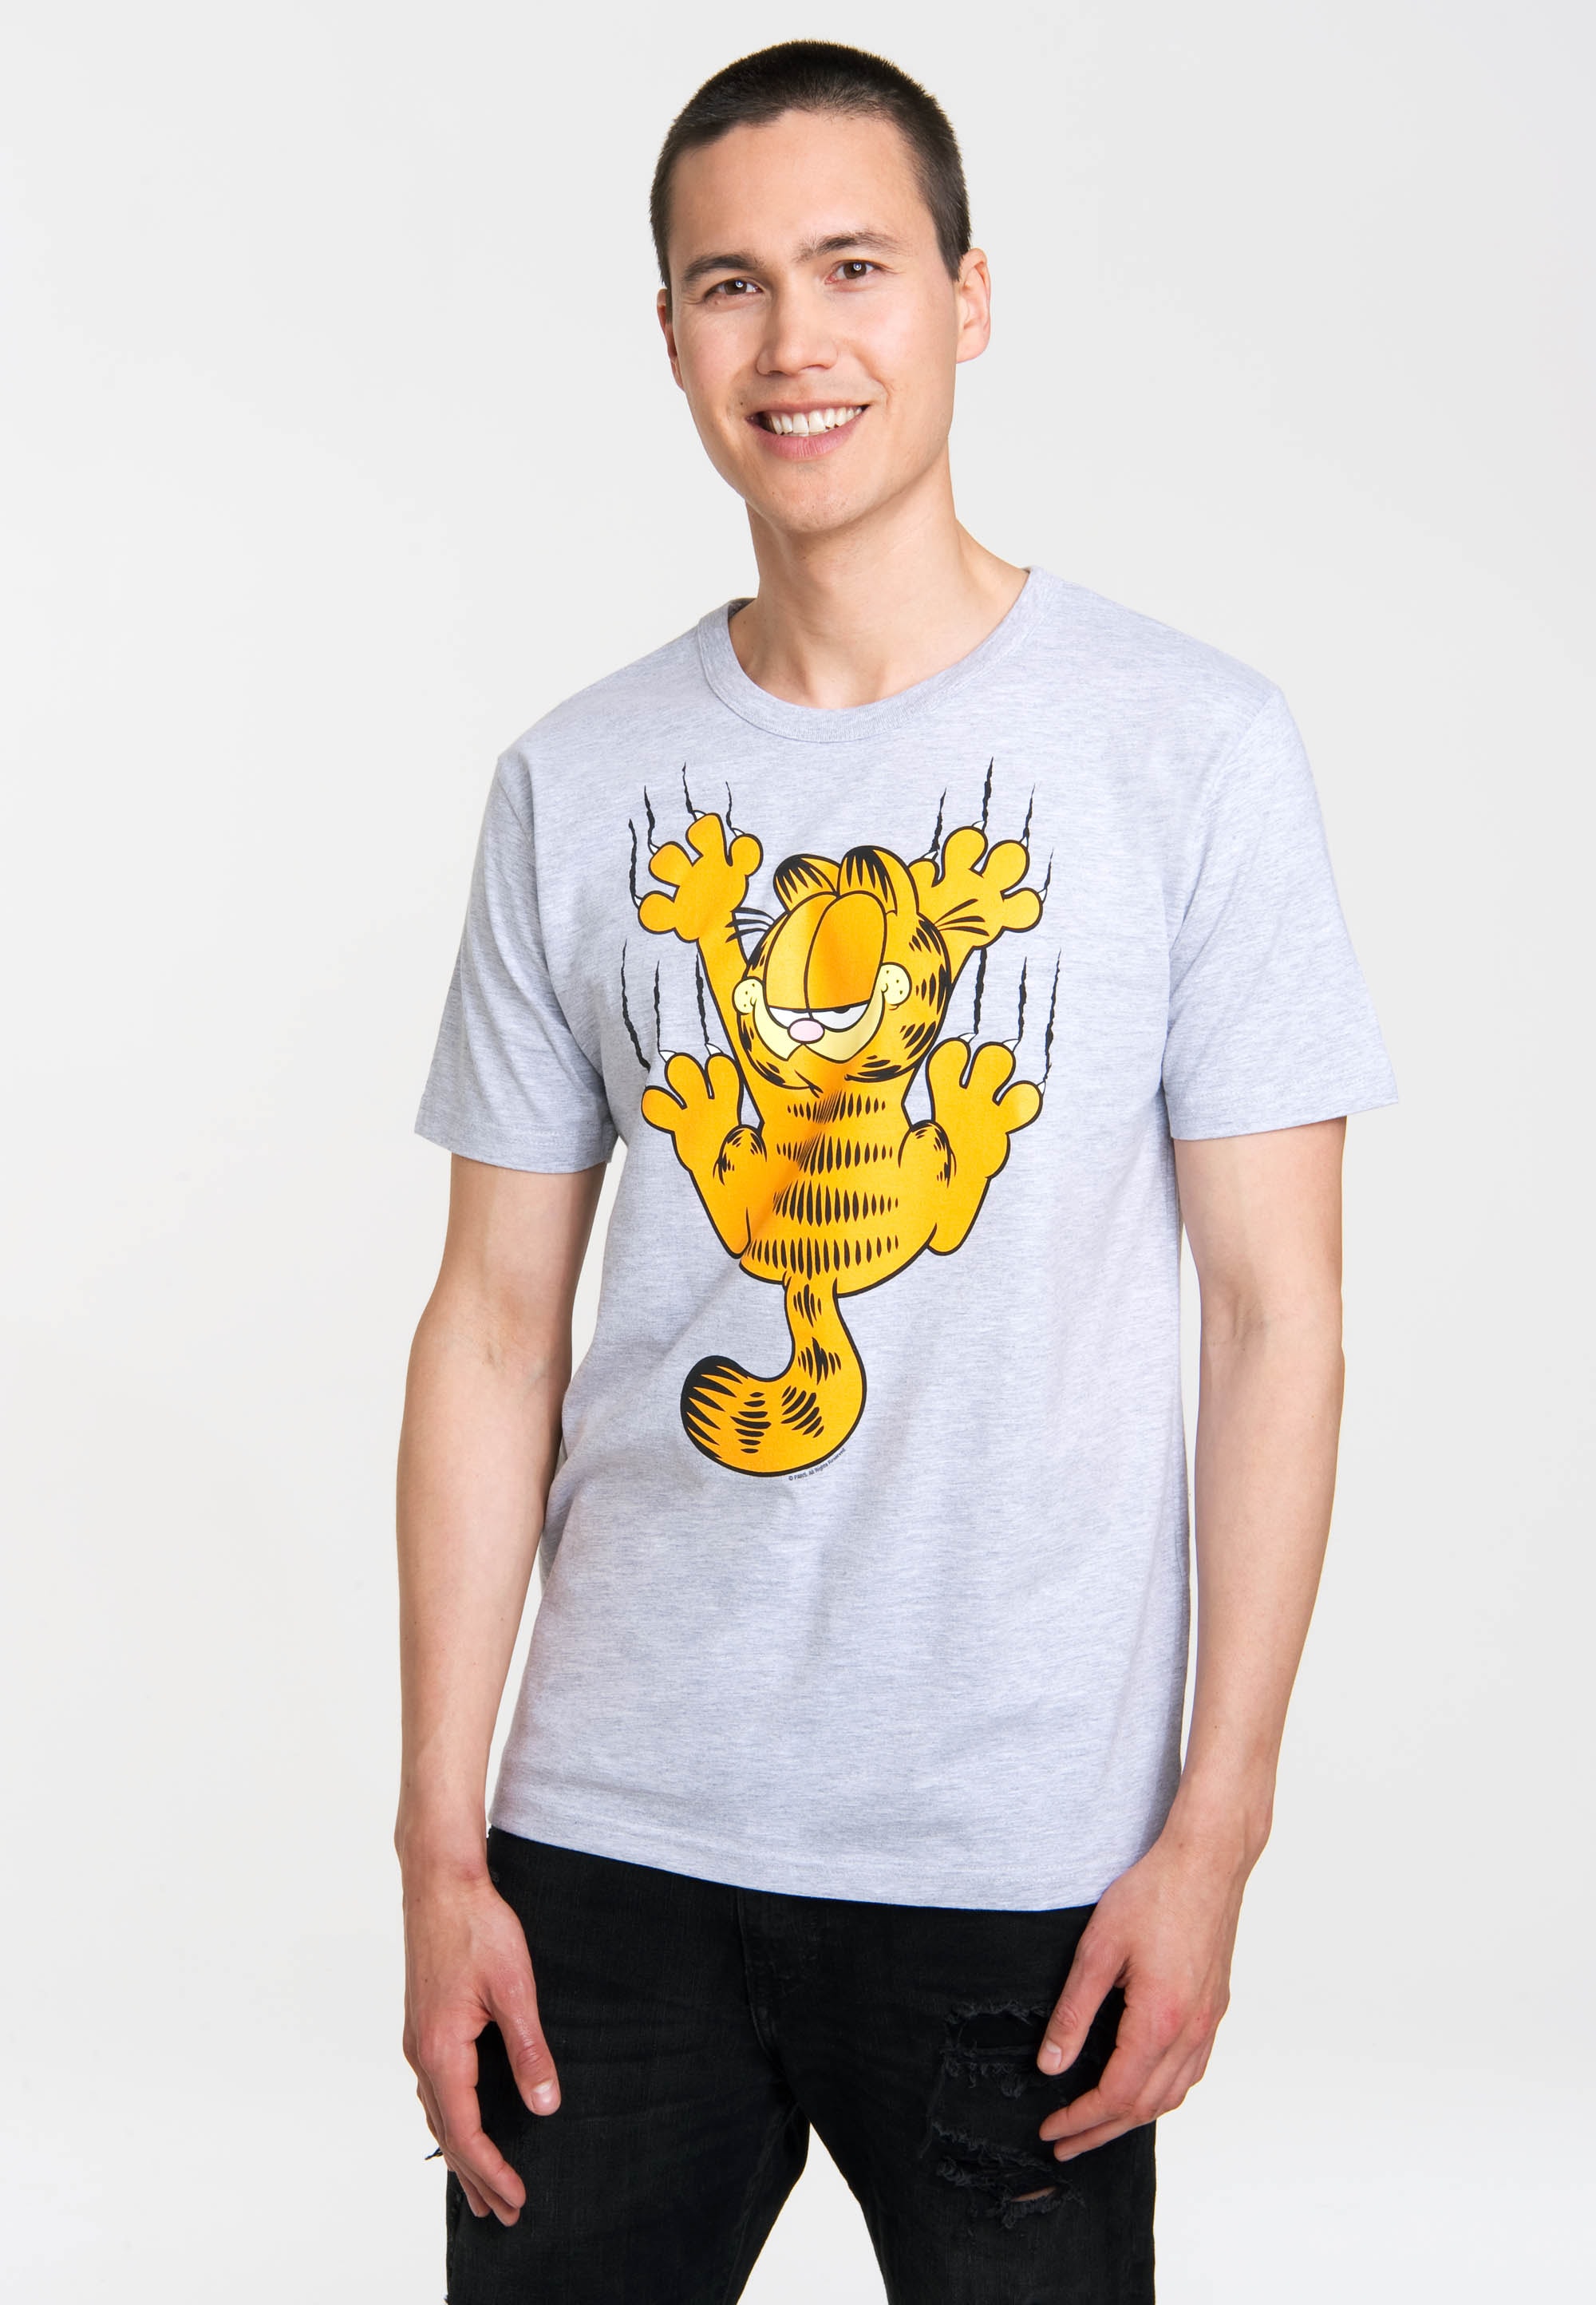 Logoshirt - Comics - Kater - Garfield - Kratzen - T-Shirt Herren - grau-meliert - Lizenziertes Originaldesign, Größe L